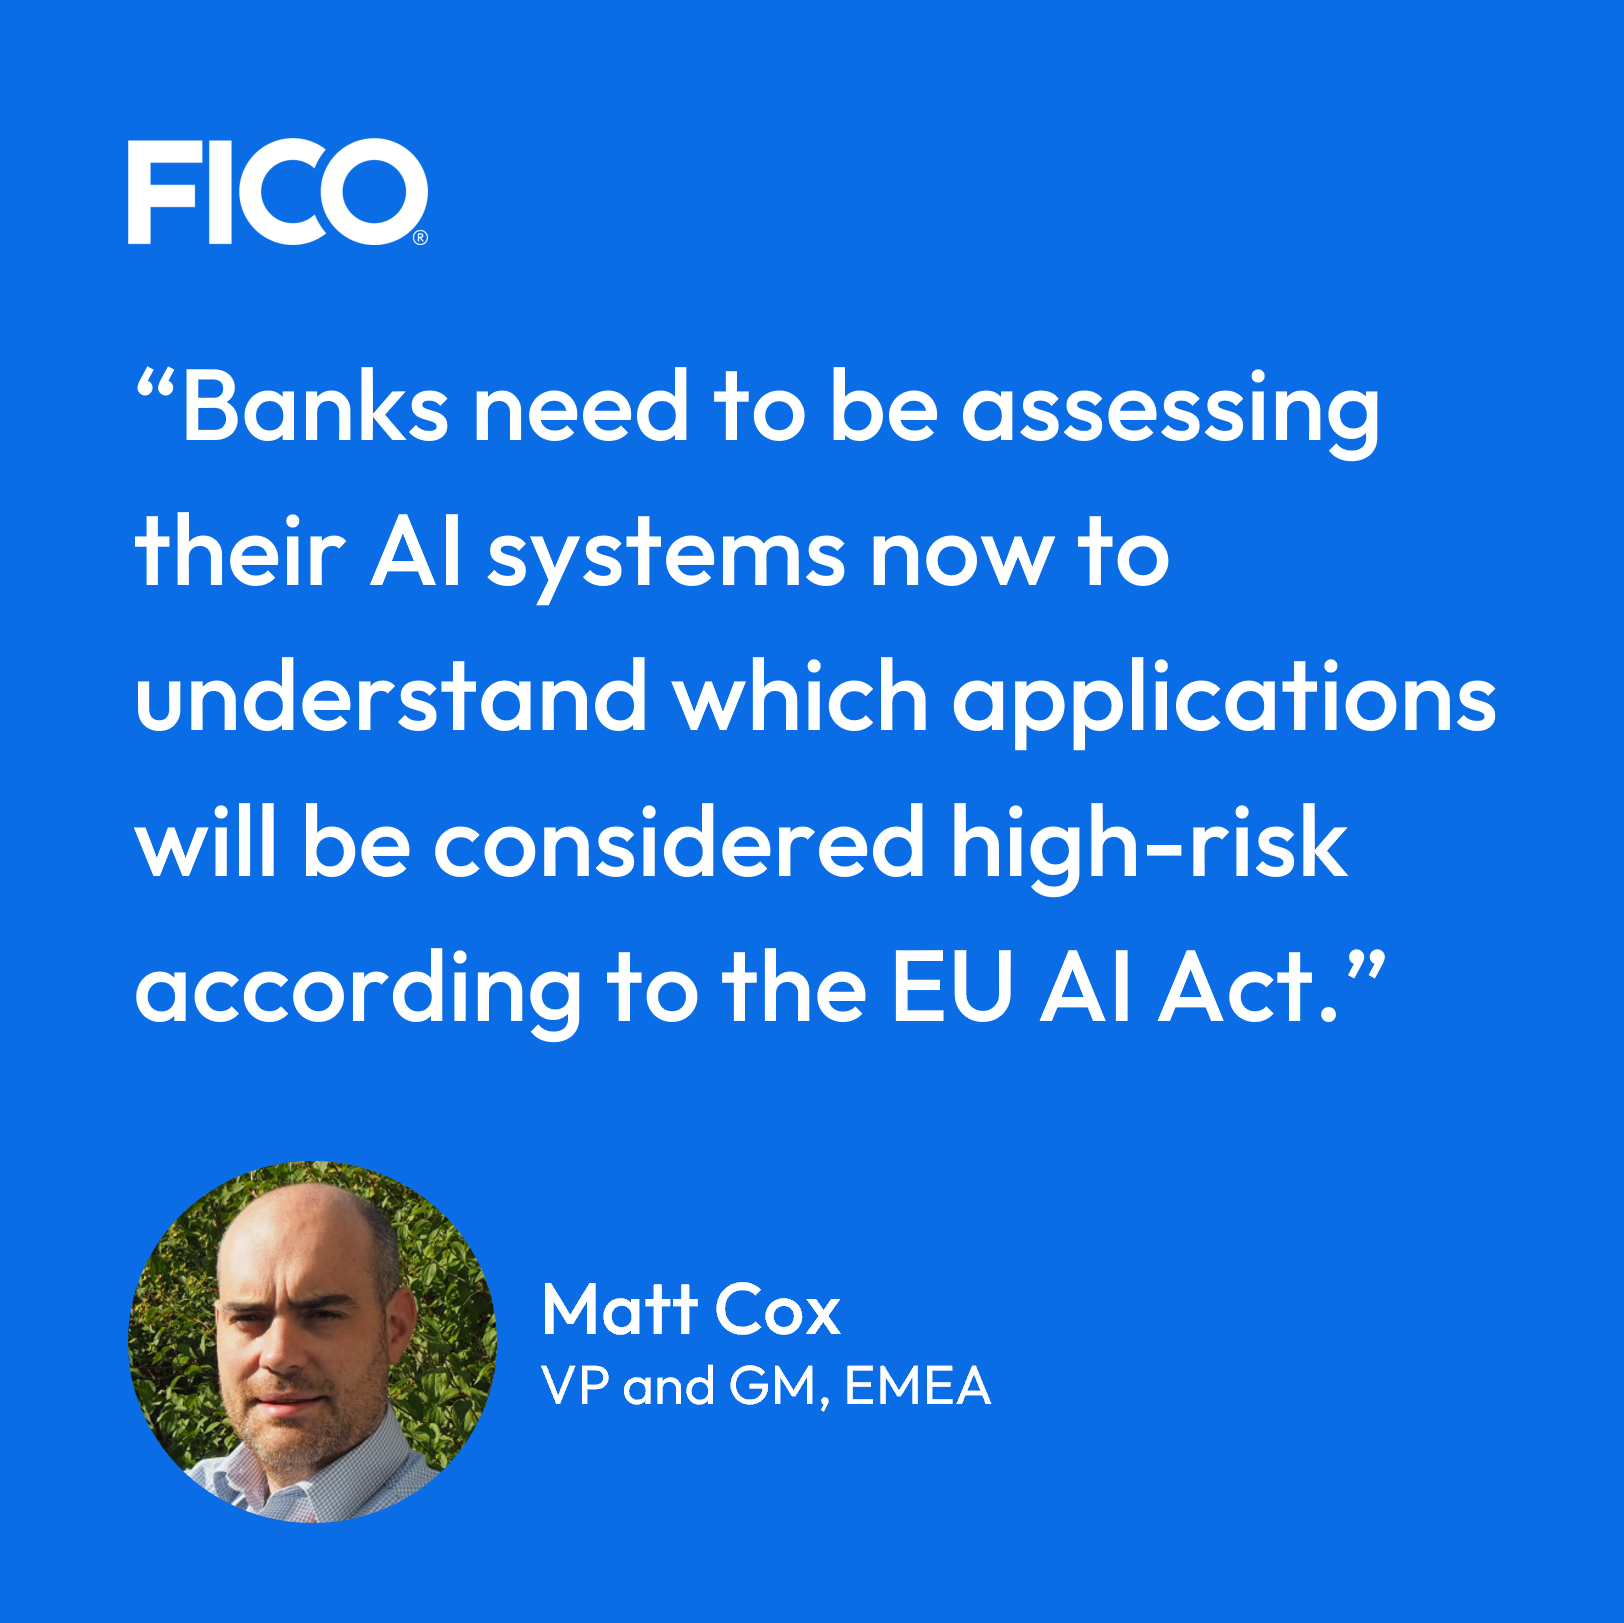 Matt Cox on EU AI regulation